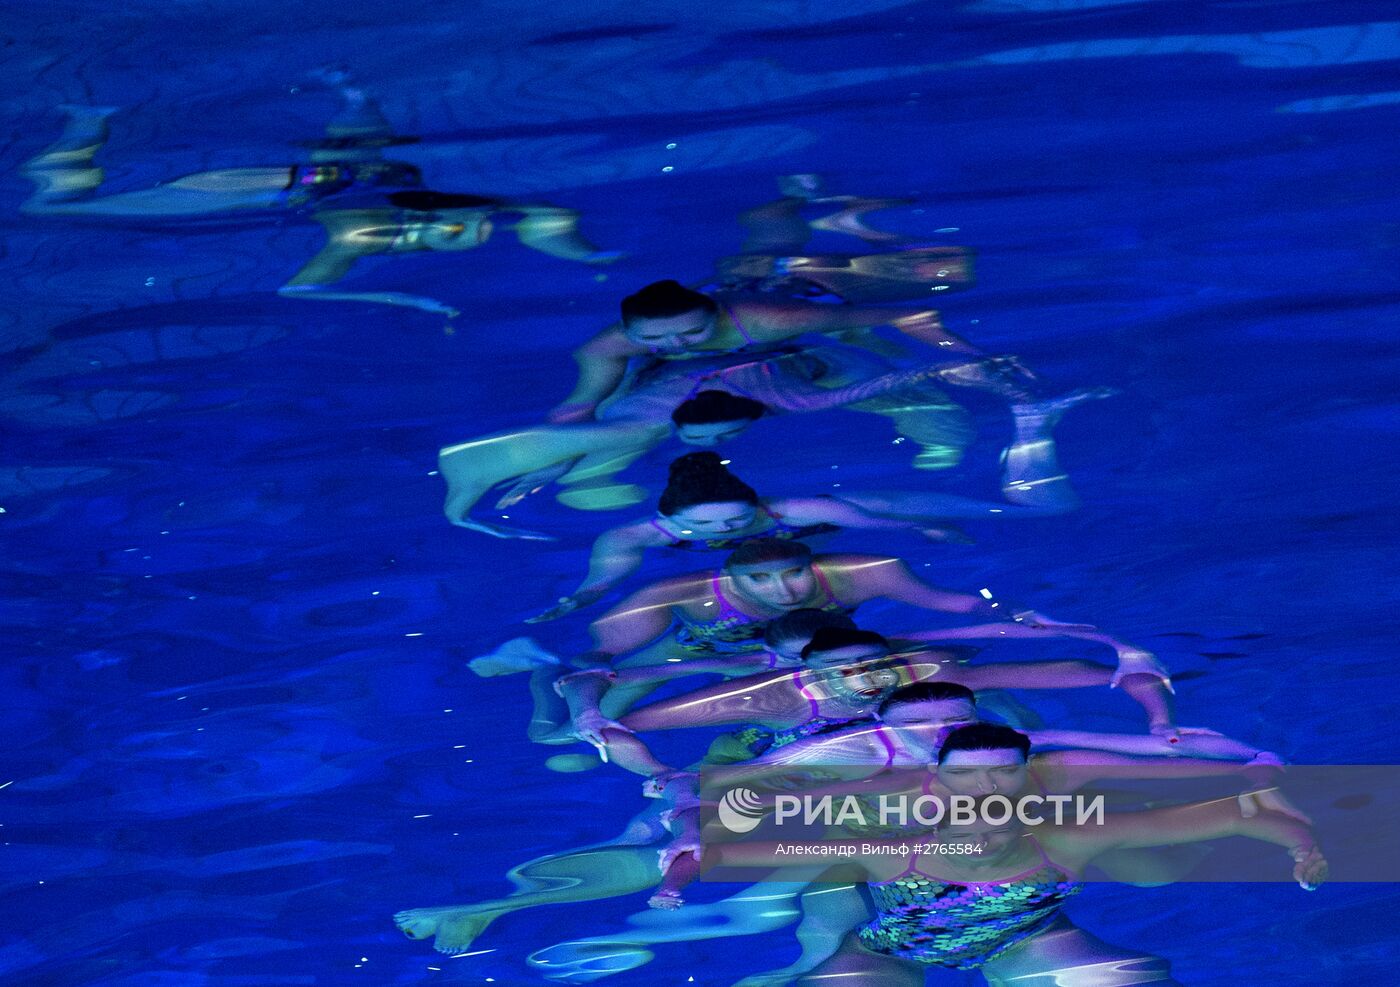 Шоу Олимпийских чемпионов по синхронному плаванию